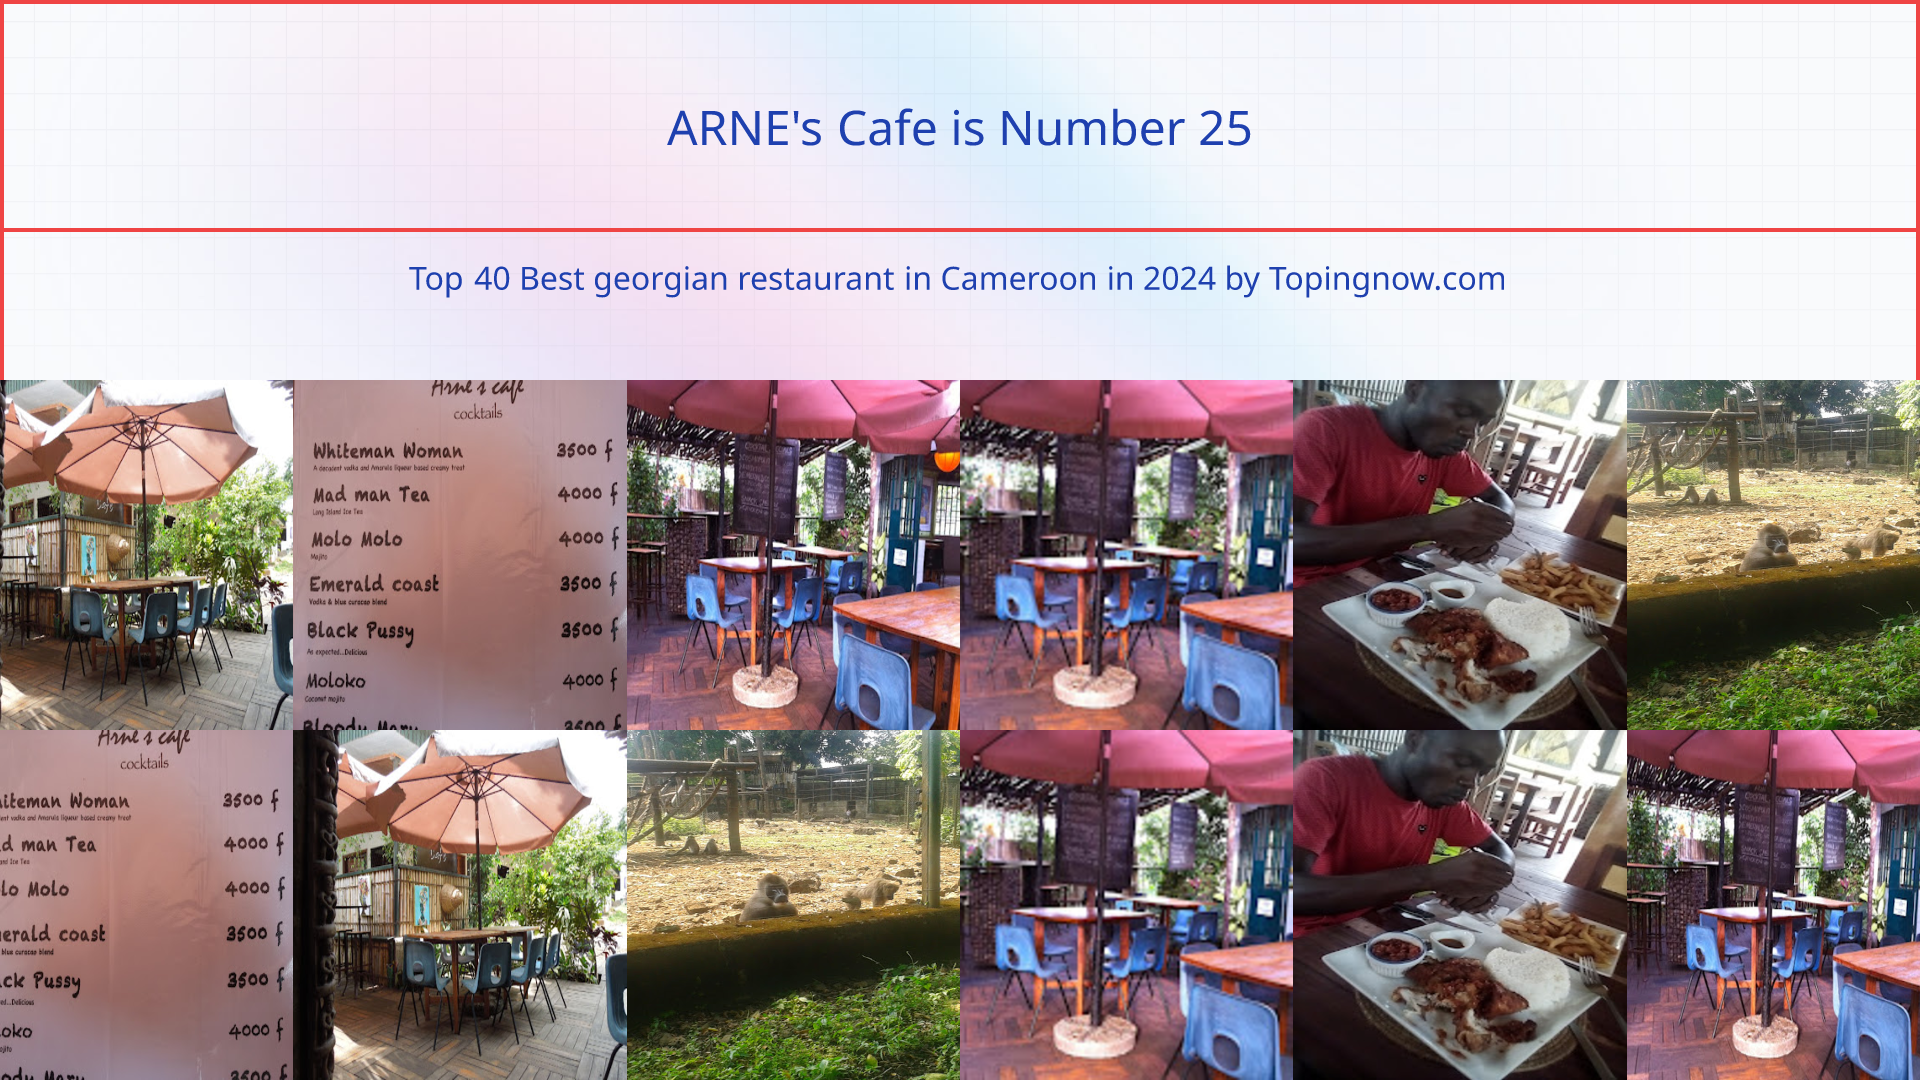 ARNE's Cafe: Top 40 Best georgian restaurant in Cameroon in 2024